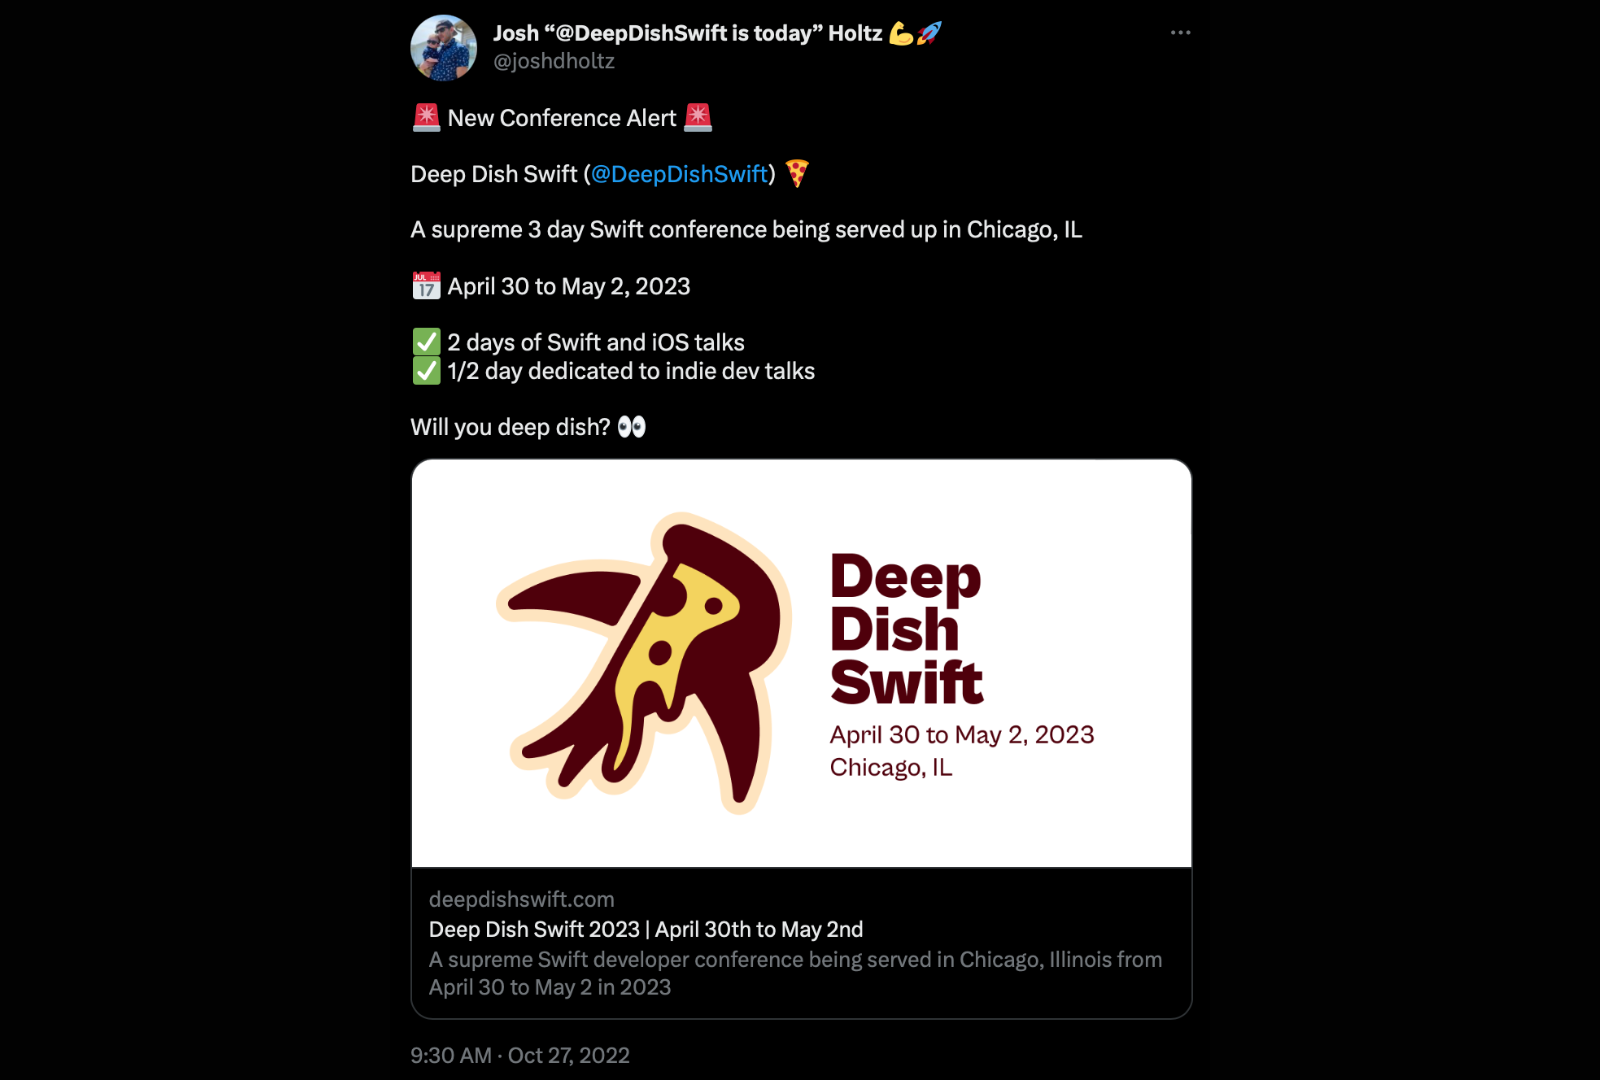 Josh Holtz tweeting about DeepDishSwift